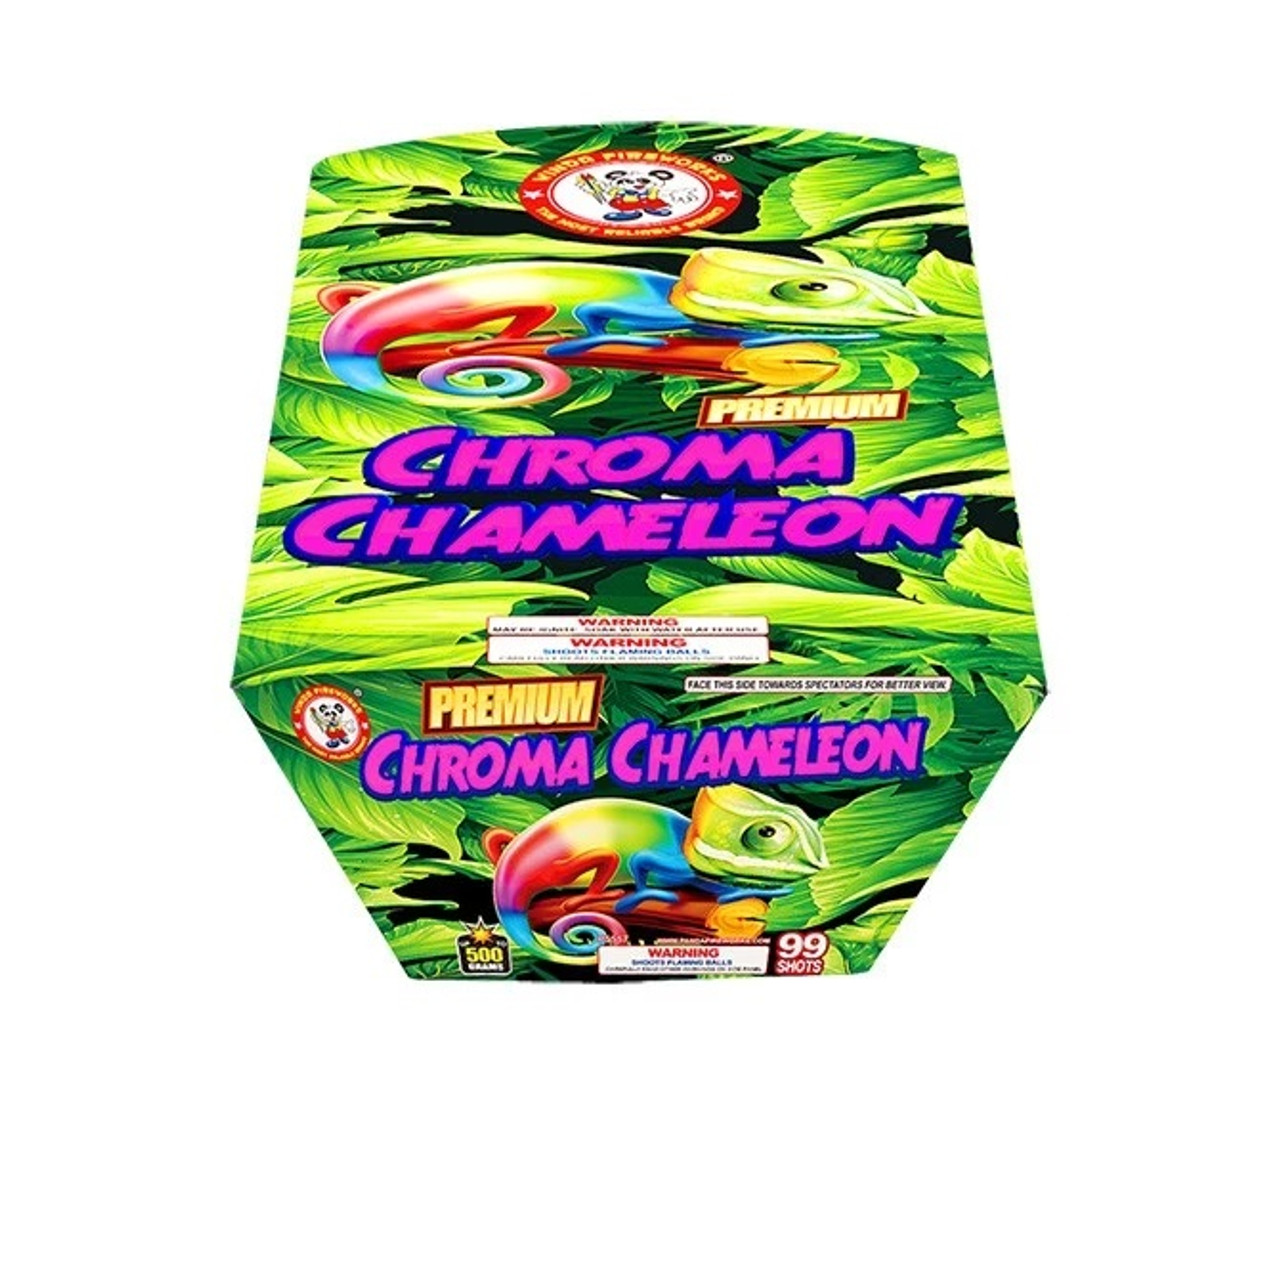 Chroma Chameleon 99